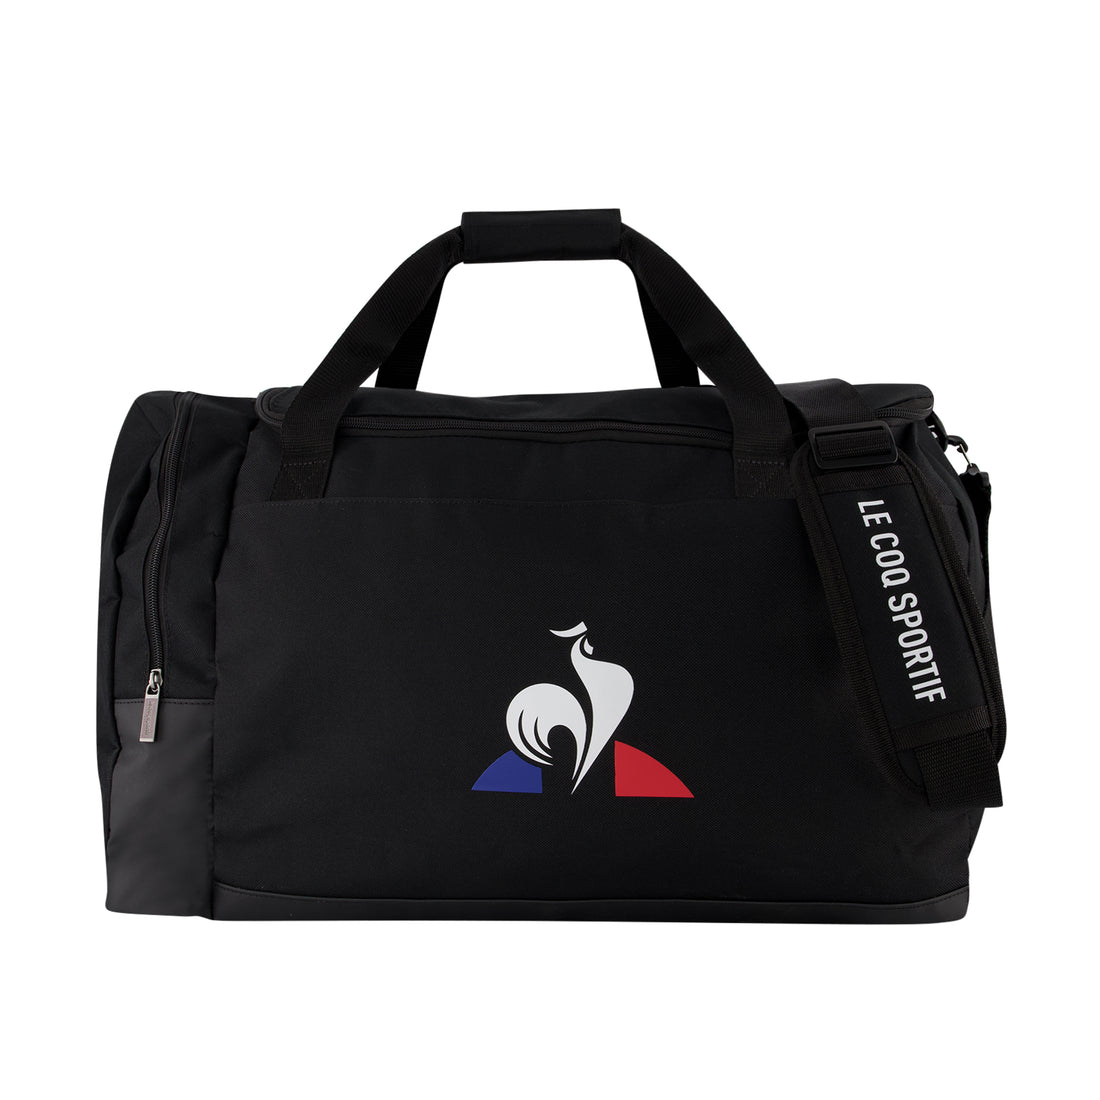 2020933-TRAINING Sportbag L/XL black | Sac de sport